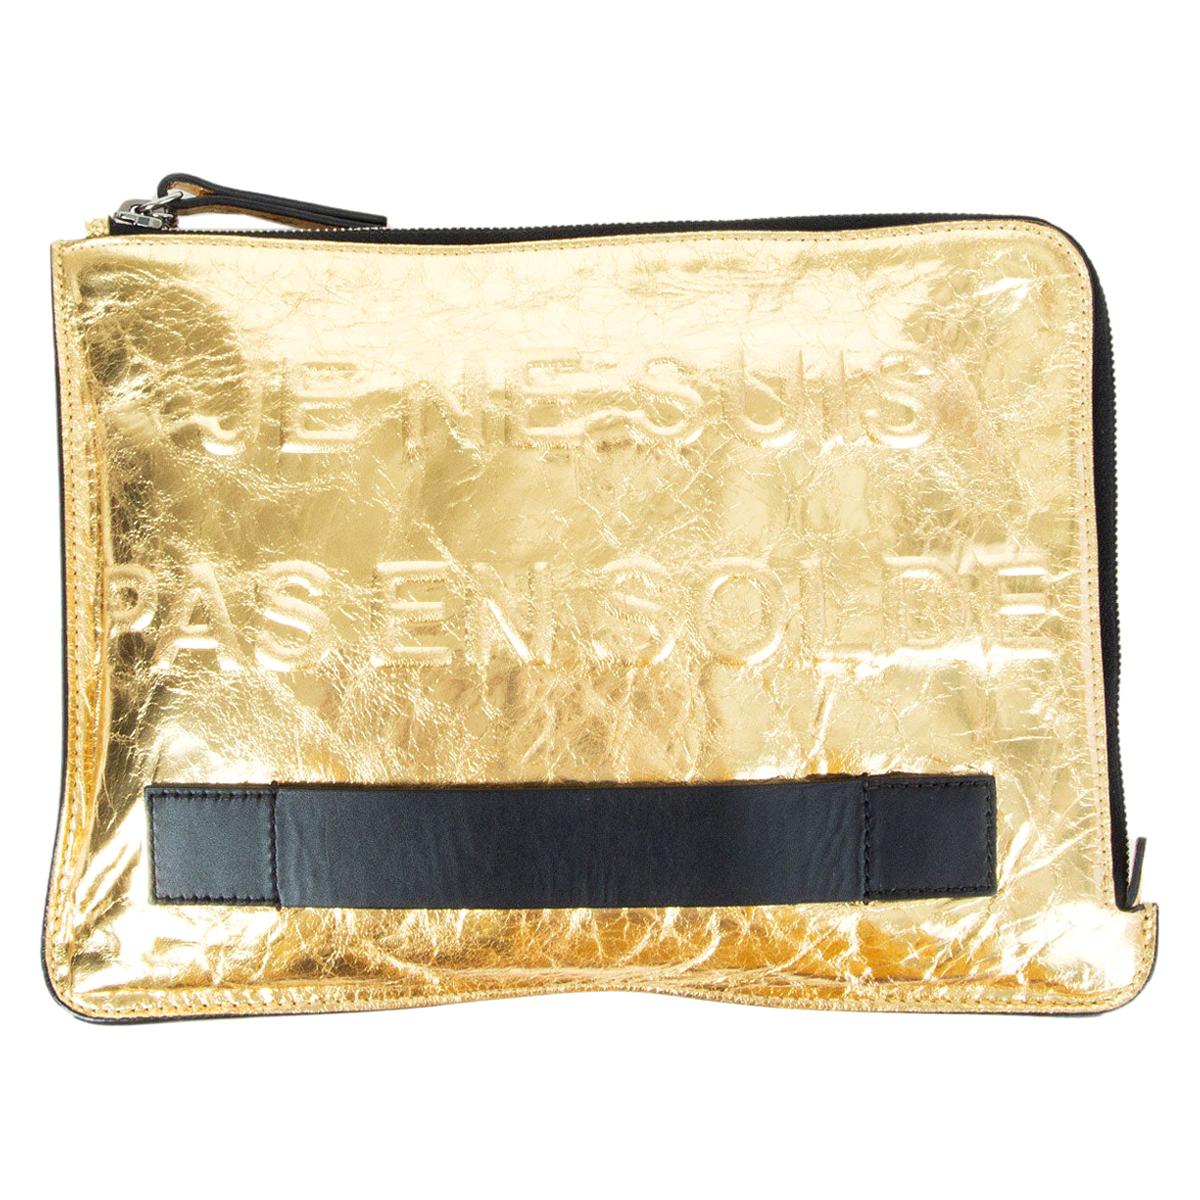 CHANEL metallic gold leather FEMININE POUCH M Clutch Bag JE NE SUIS PAS EN SOLDE